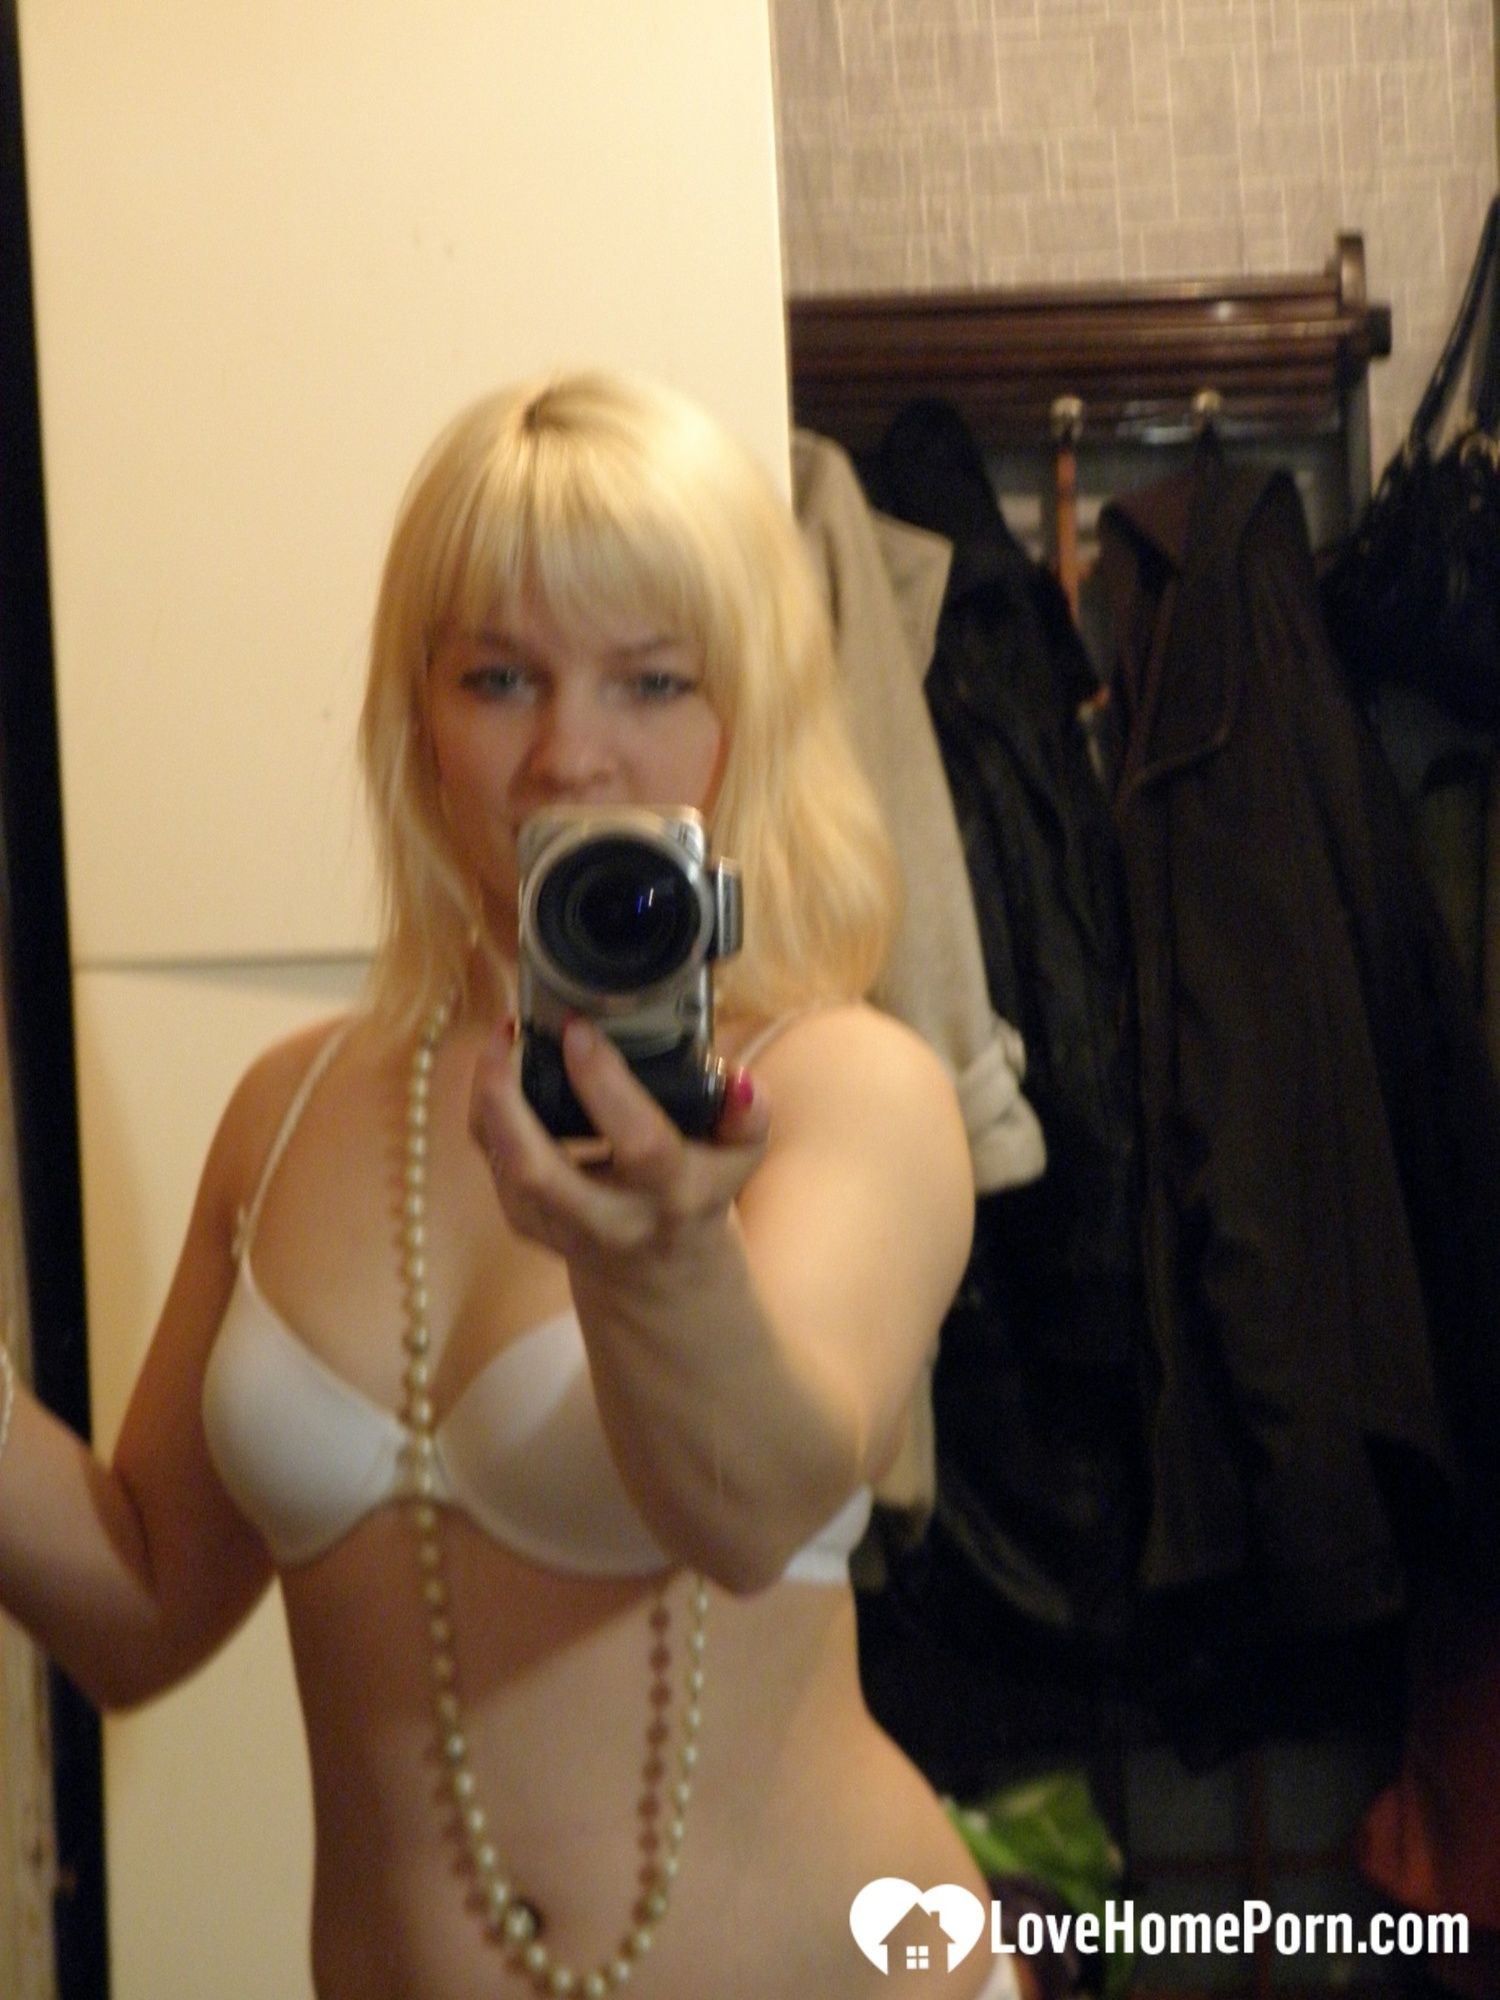 Aroused blonde in stockings taking naughty selfies #2